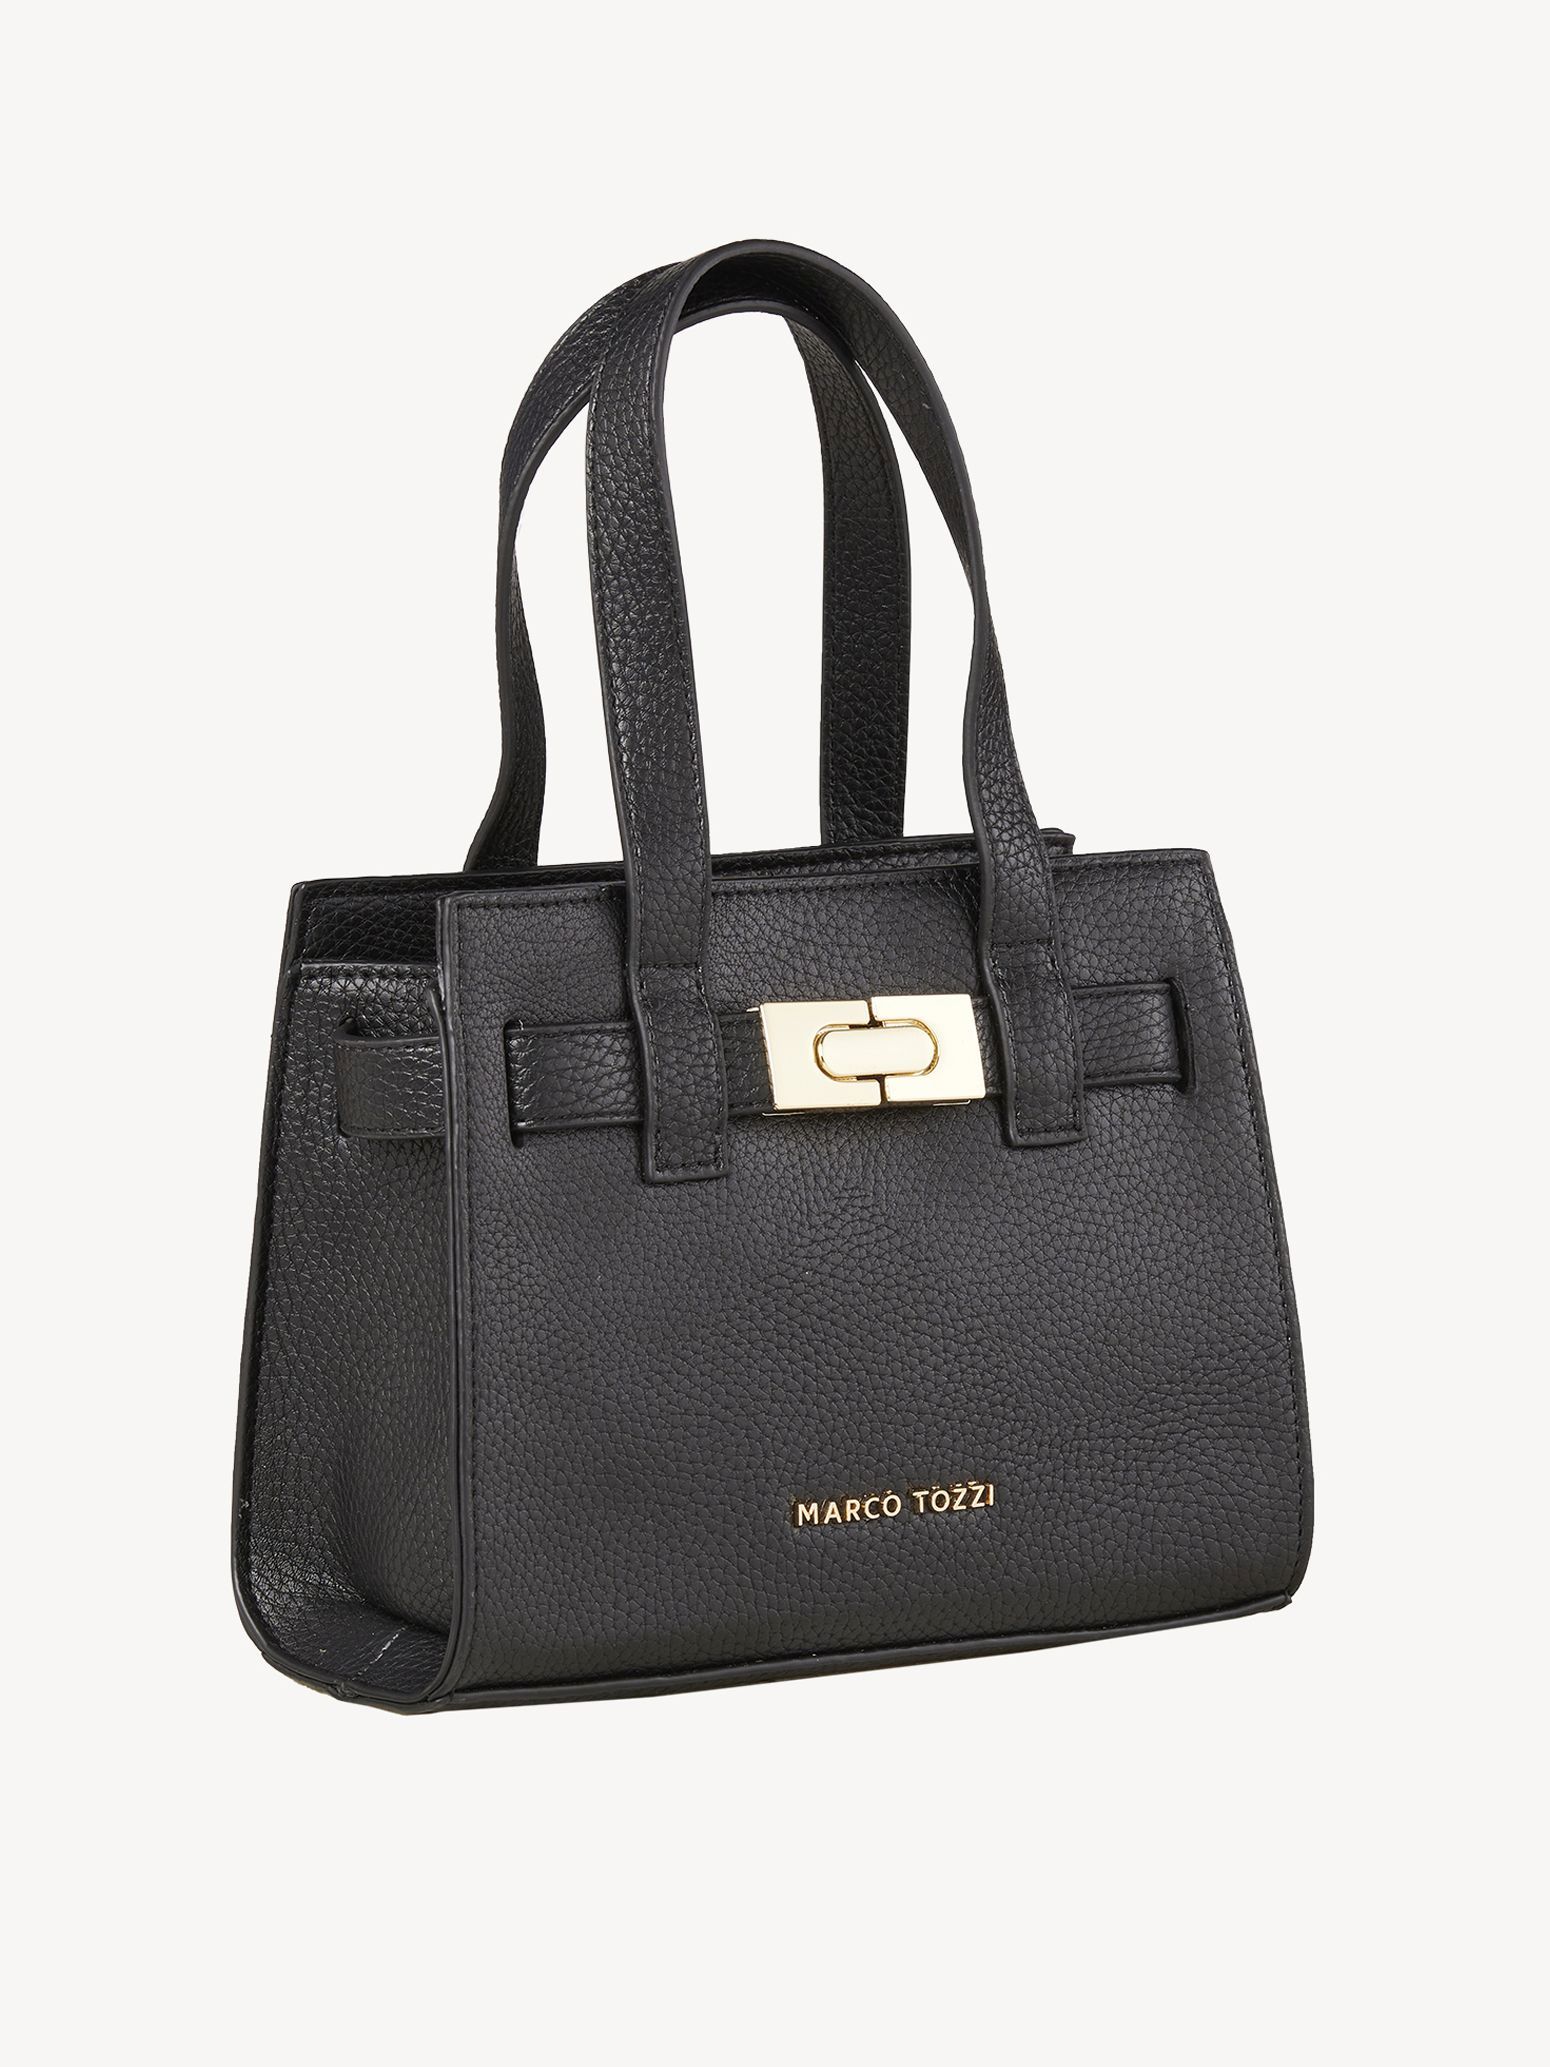 Handbag - black, BLACK/GOLD, hi-res